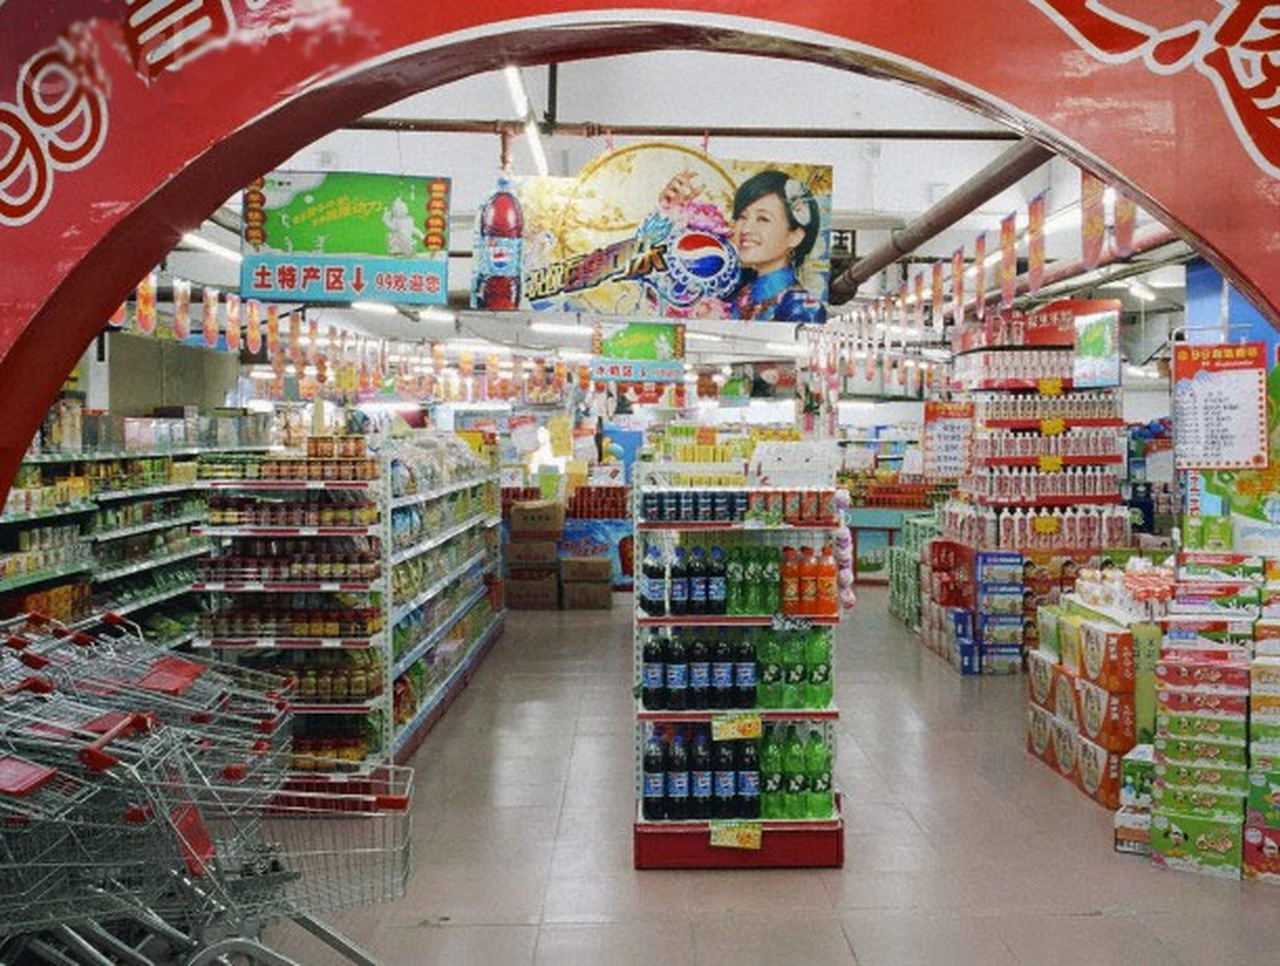 "Los acuerdos de precios no controlan la inflación", según los supermercados chinos